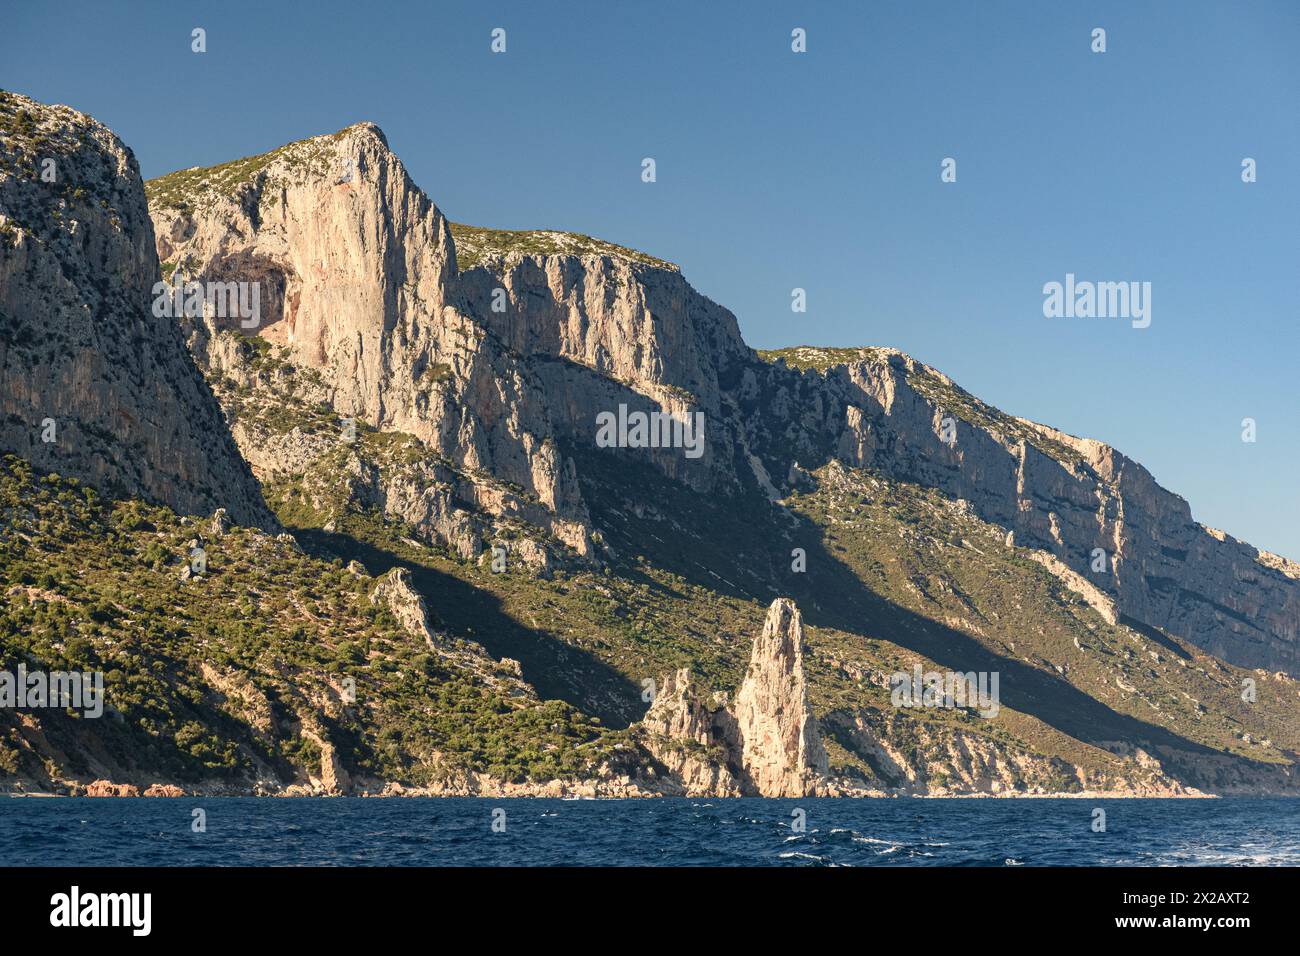 Klippenküste in der Nähe von Santa Maria Navarrese mit Felsenspitze namens Pedra Longa im Hintergrund im Osten Sardiniens Stockfoto